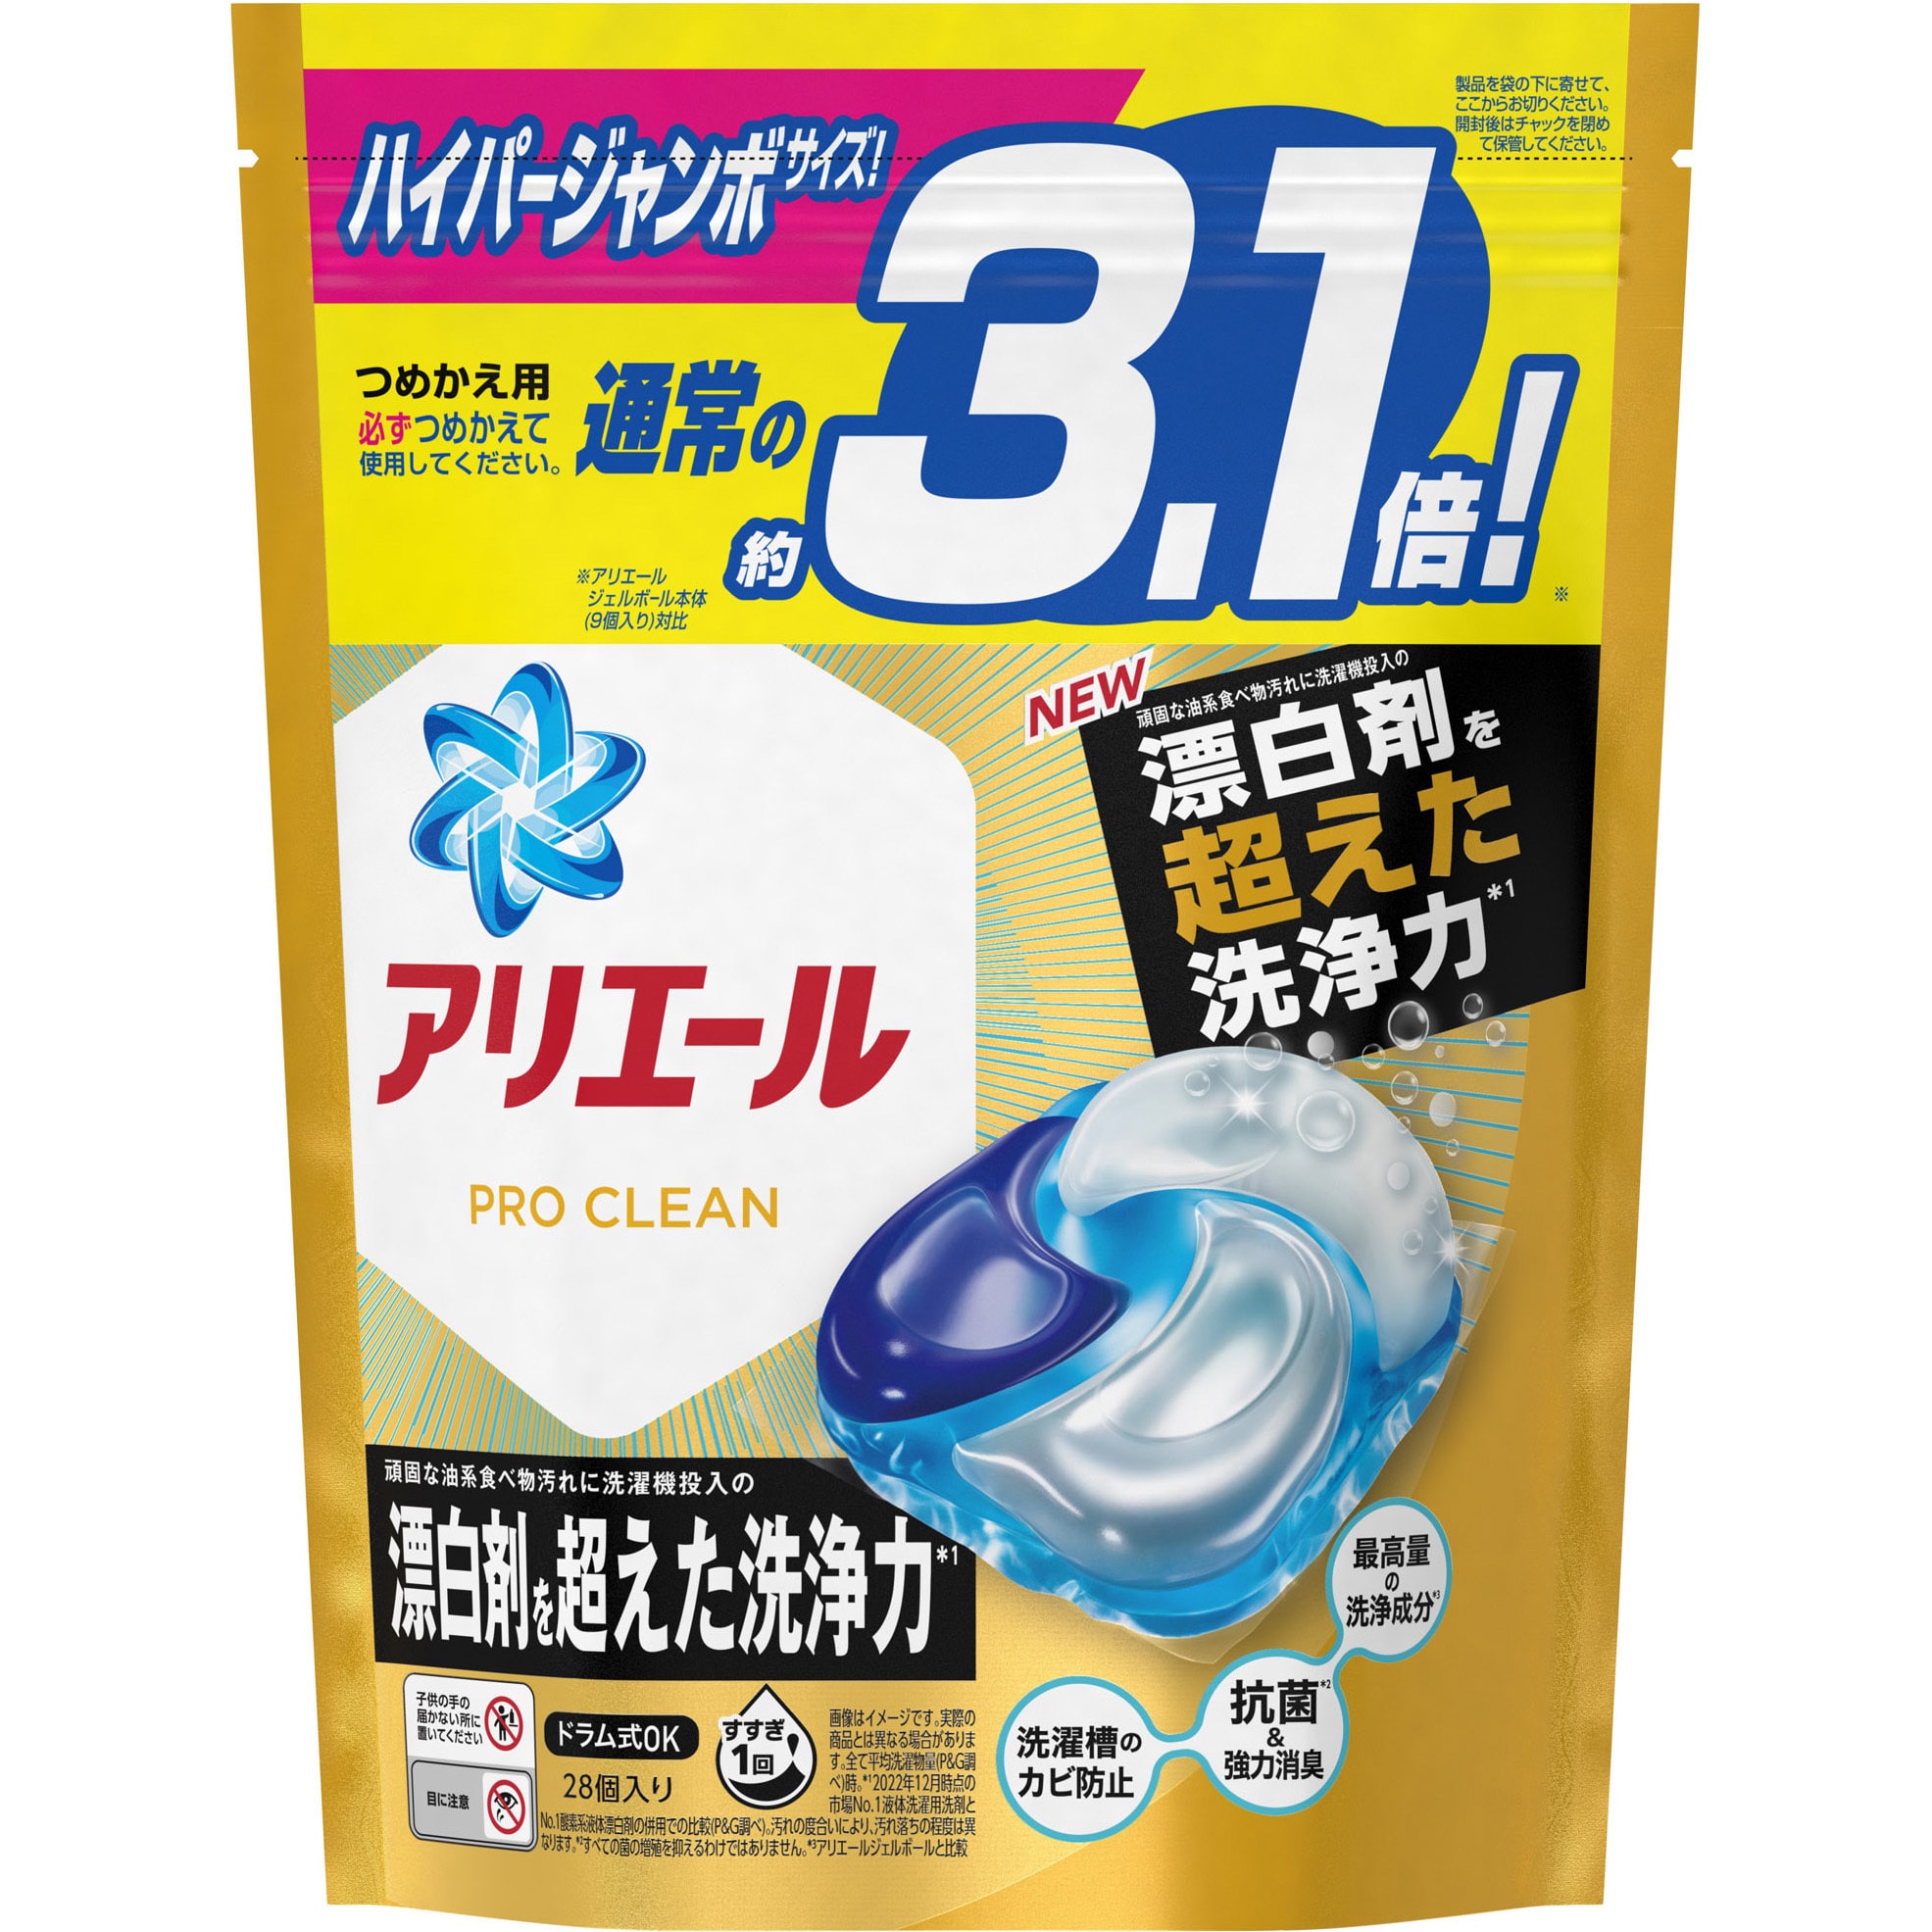 P&G アリエール 濃縮ジェル自動投入用洗剤 8個セット② - 洗濯洗剤